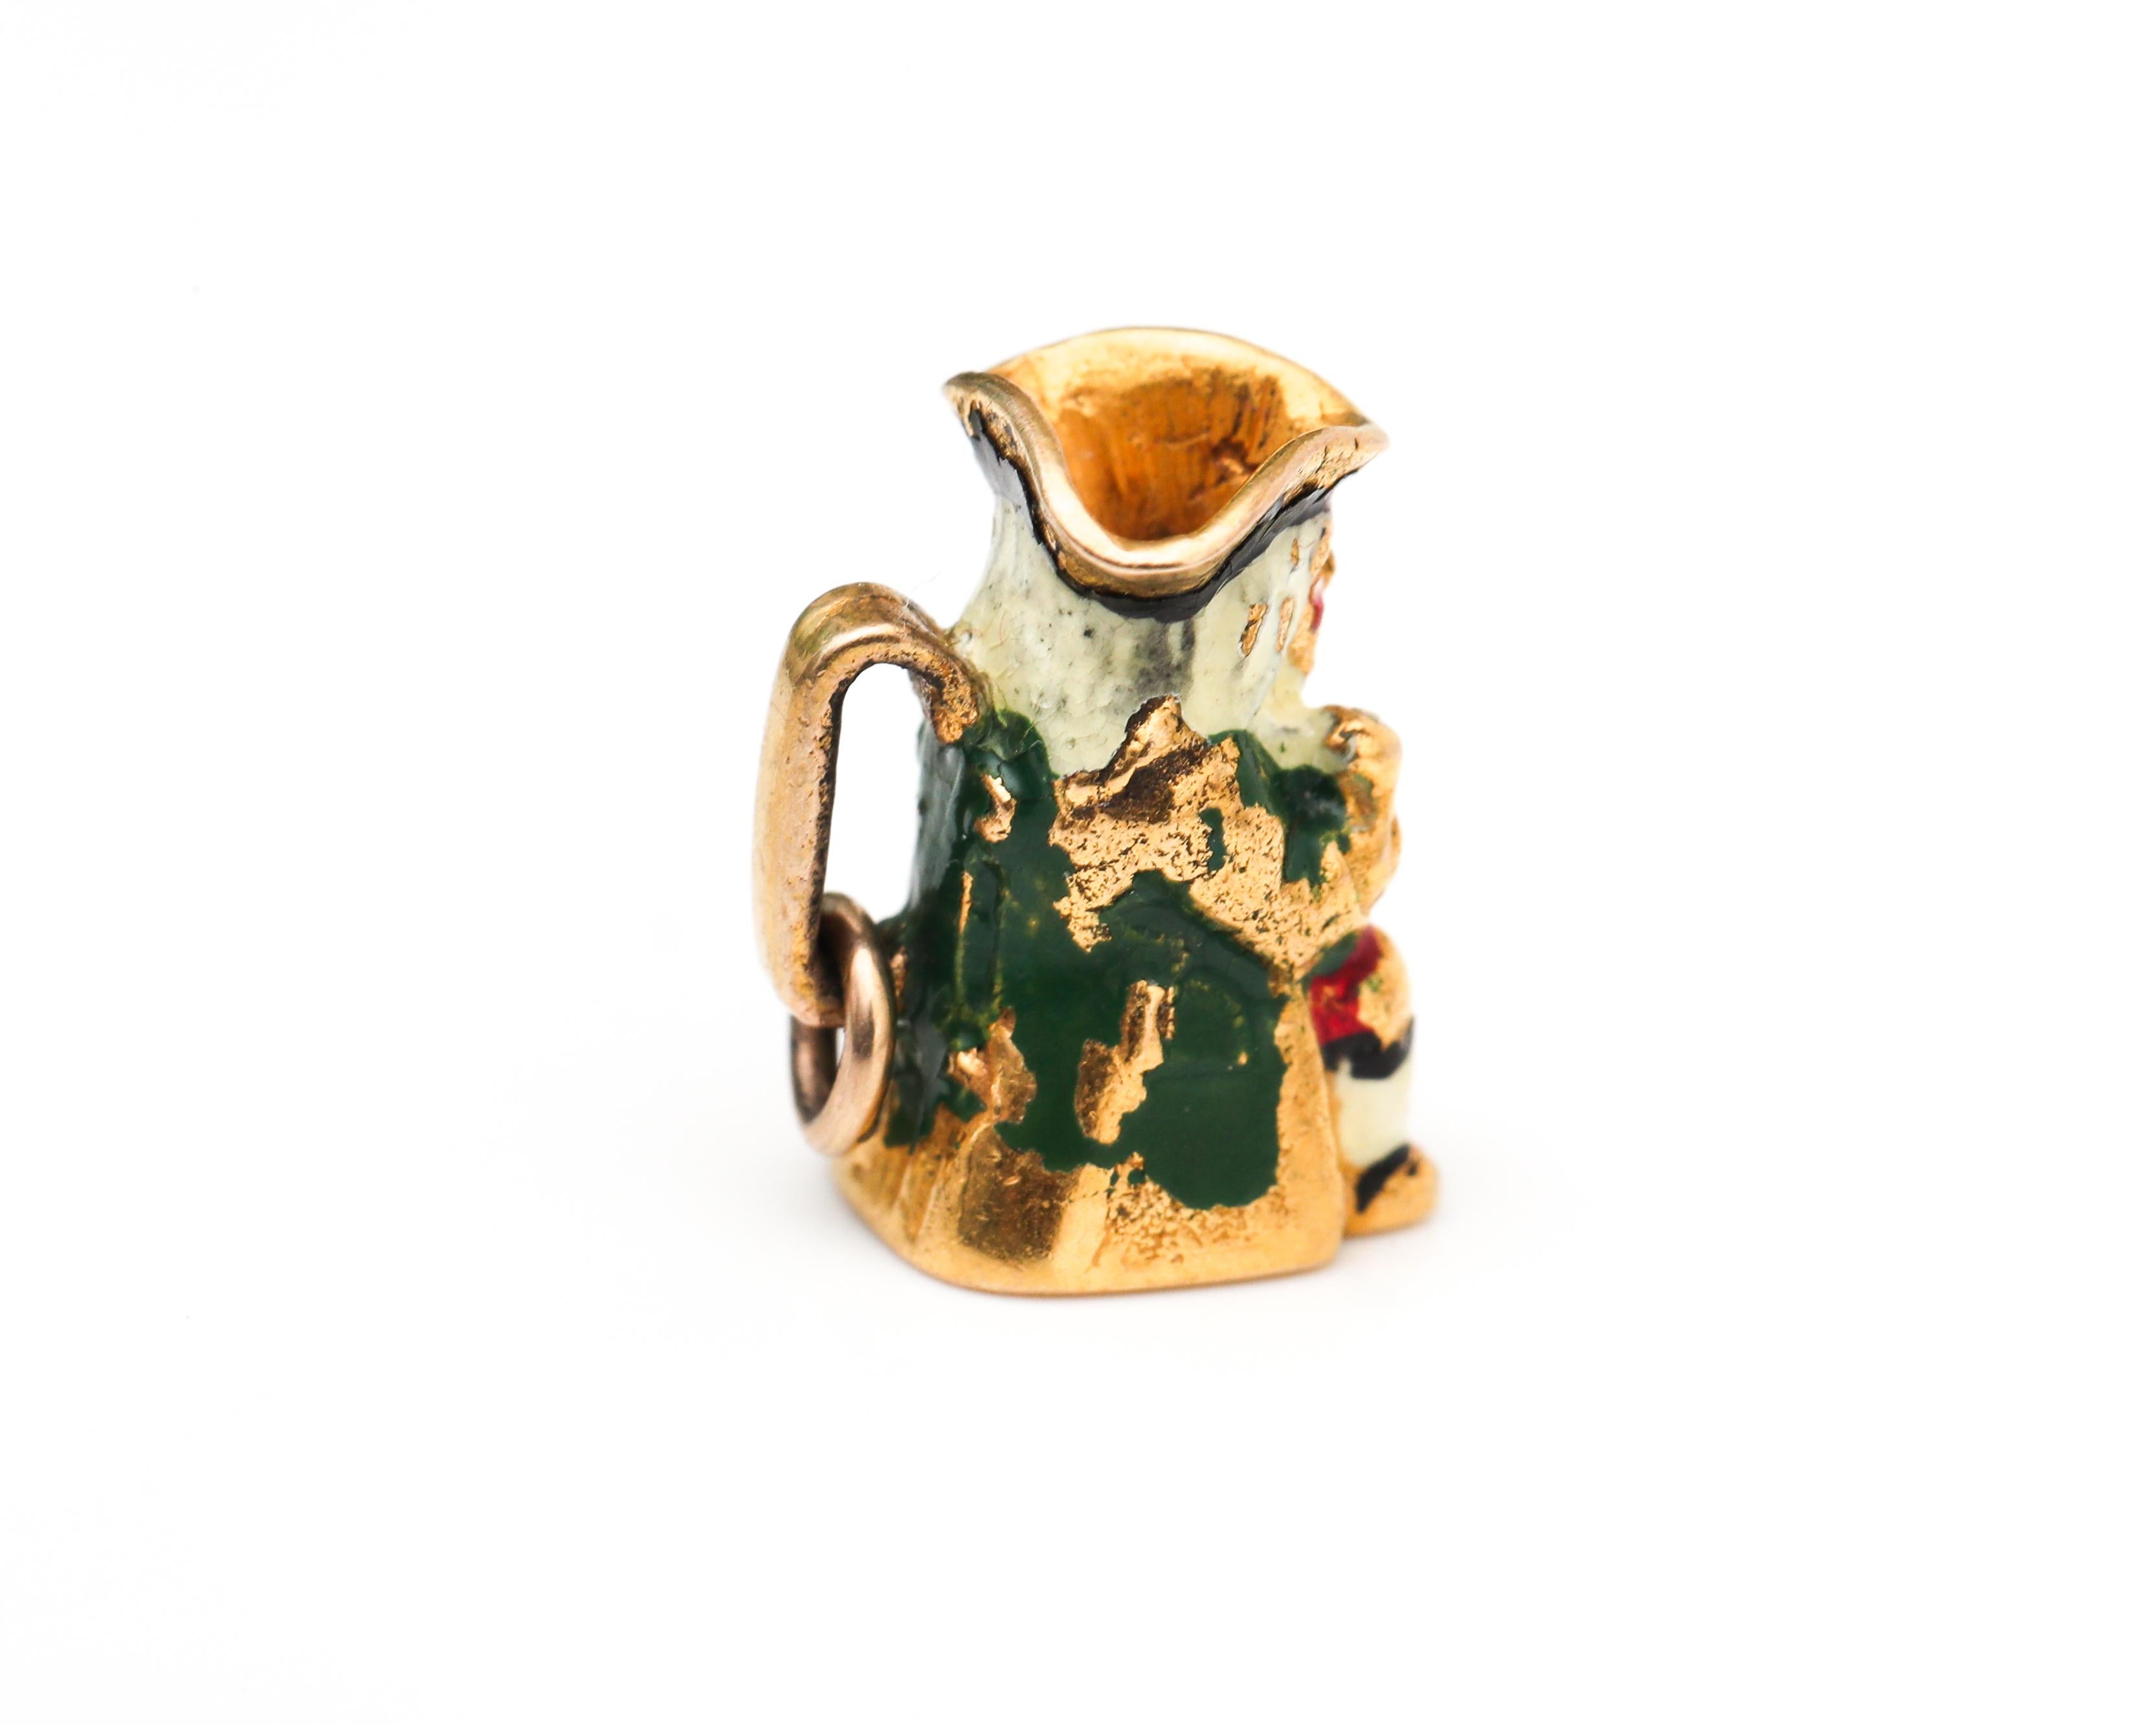 Bezaubernde Beerstein-Tasse aus den 1930er Jahren mit Emaille und 9-karätigem Gold 
Die Tasse zeigt ein kleines Männchen mit Emaillearbeiten als Hauptbestandteil. Es gibt einen Griff, an dem ein Ringverschluss zur Verwendung an einem Armband oder